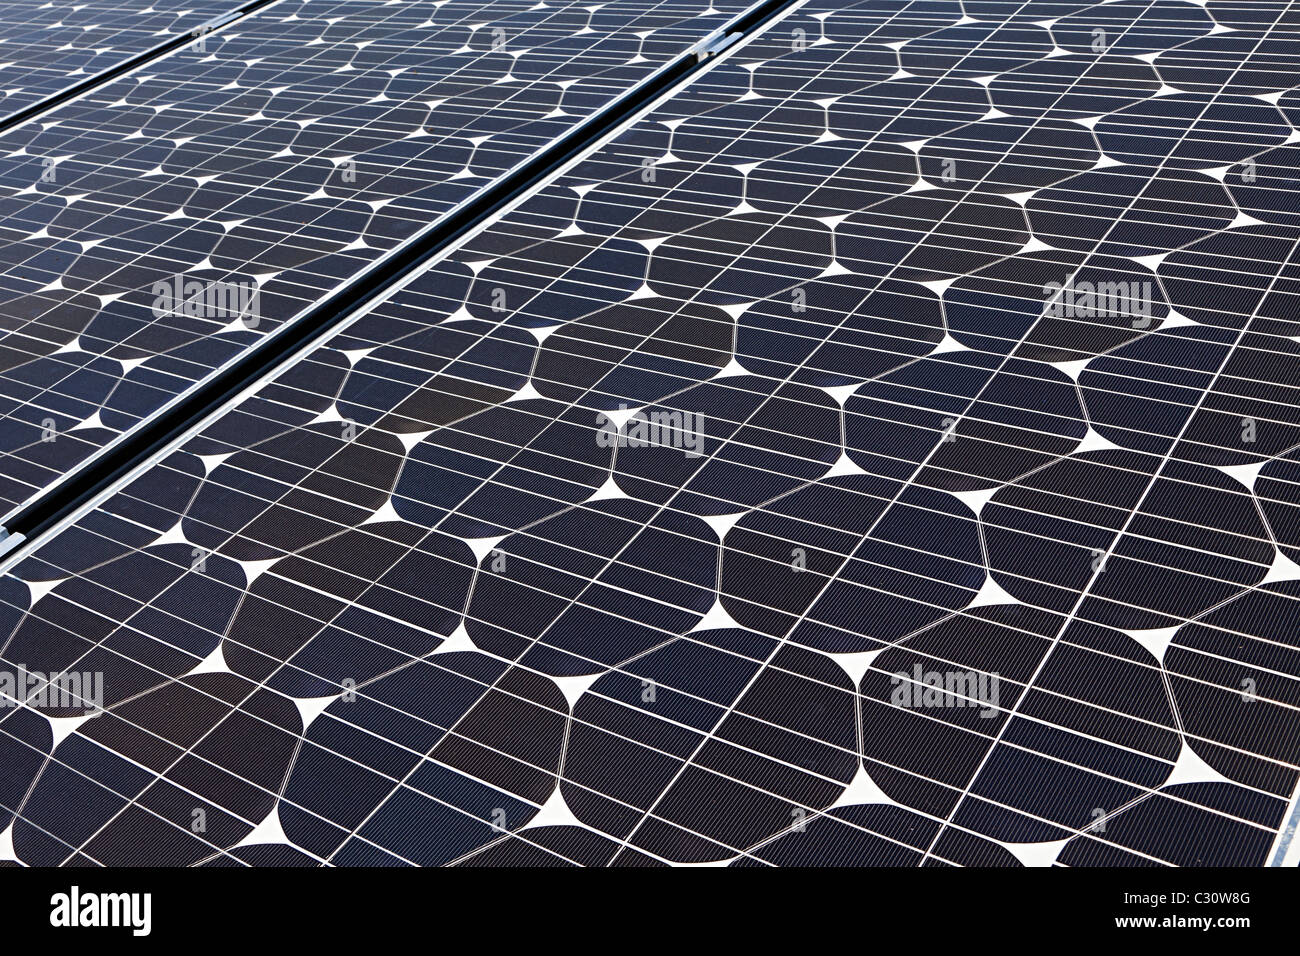 Sanyo Solar pv panneaux photovoltaïques sur toit de maison Galles UK Banque D'Images